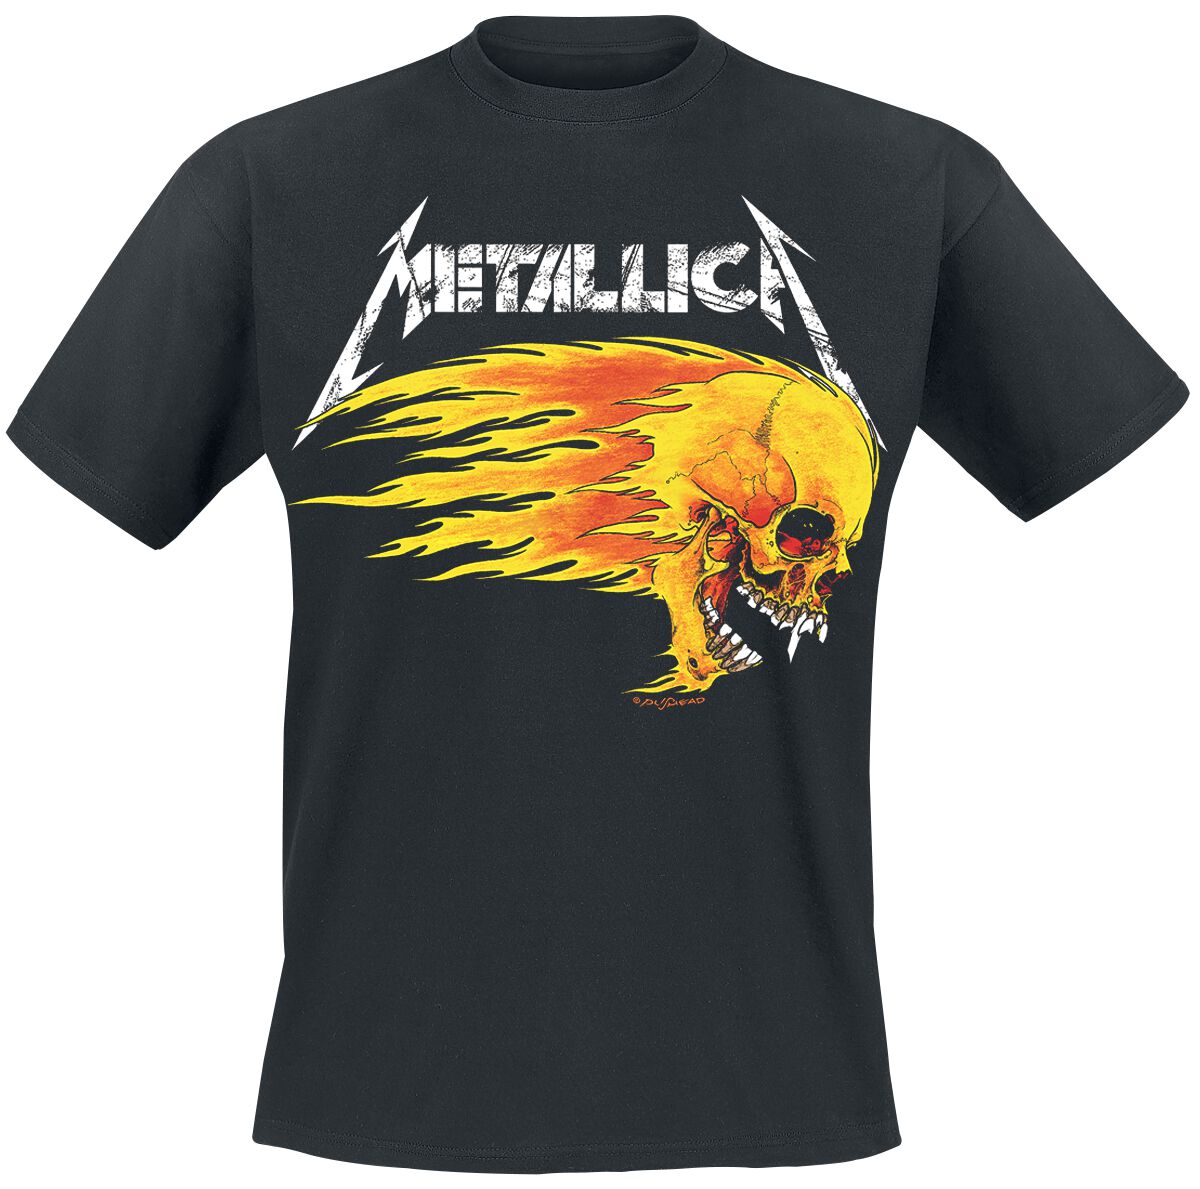 Metallica T-Shirt - Flaming Skull Tour Tee - S bis 5XL - für Männer - Größe 4XL - schwarz  - Lizenziertes Merchandise!